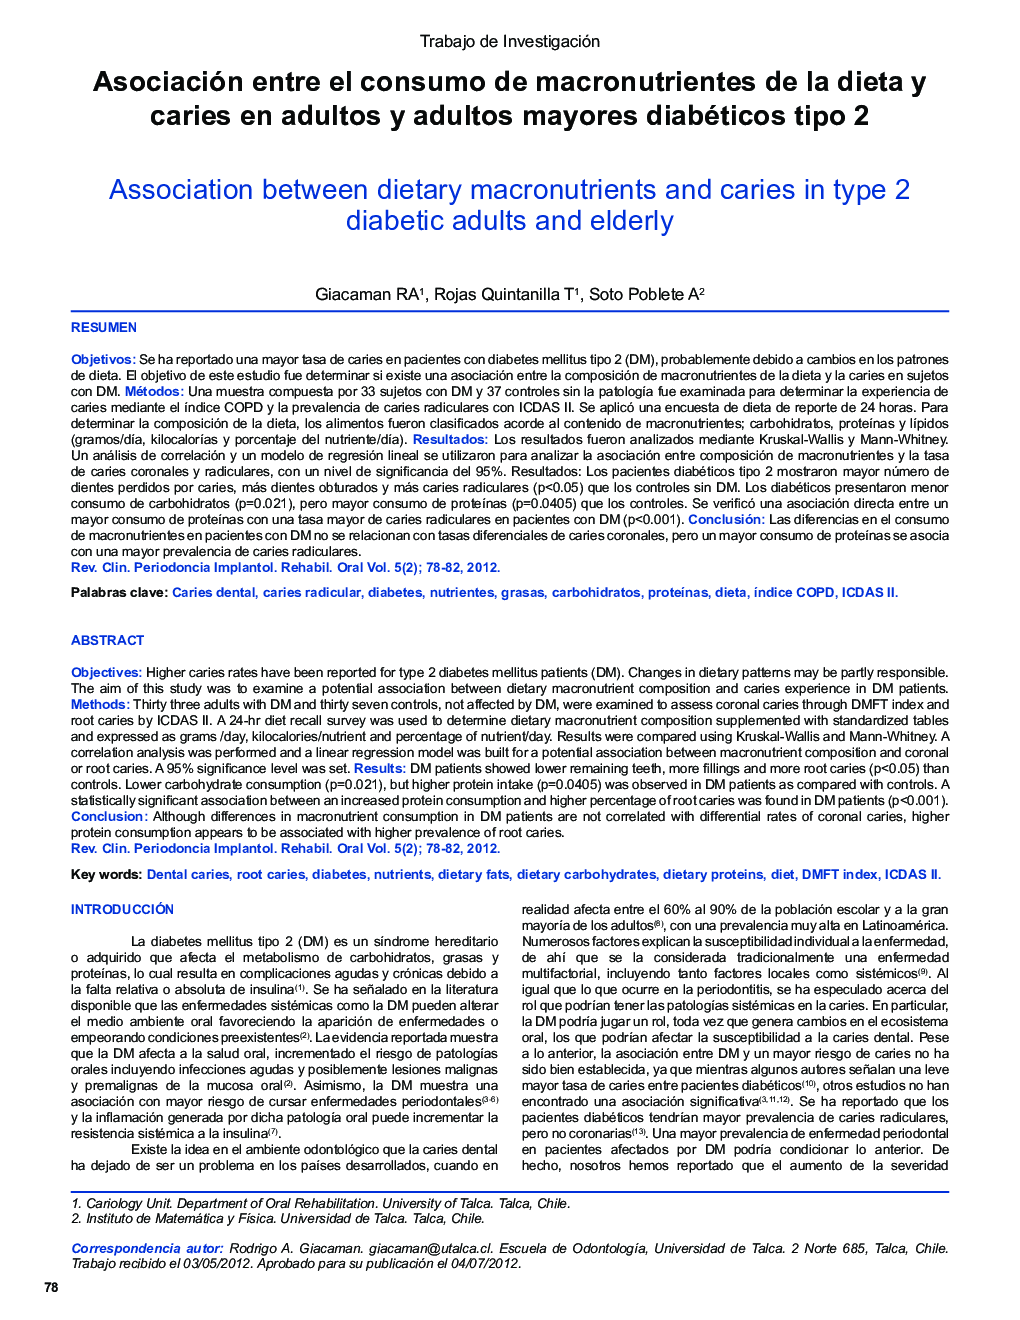 Asociación entre el consumo de macronutrientes de la dieta y caries en adultos y adultos mayores diabéticos tipo 2